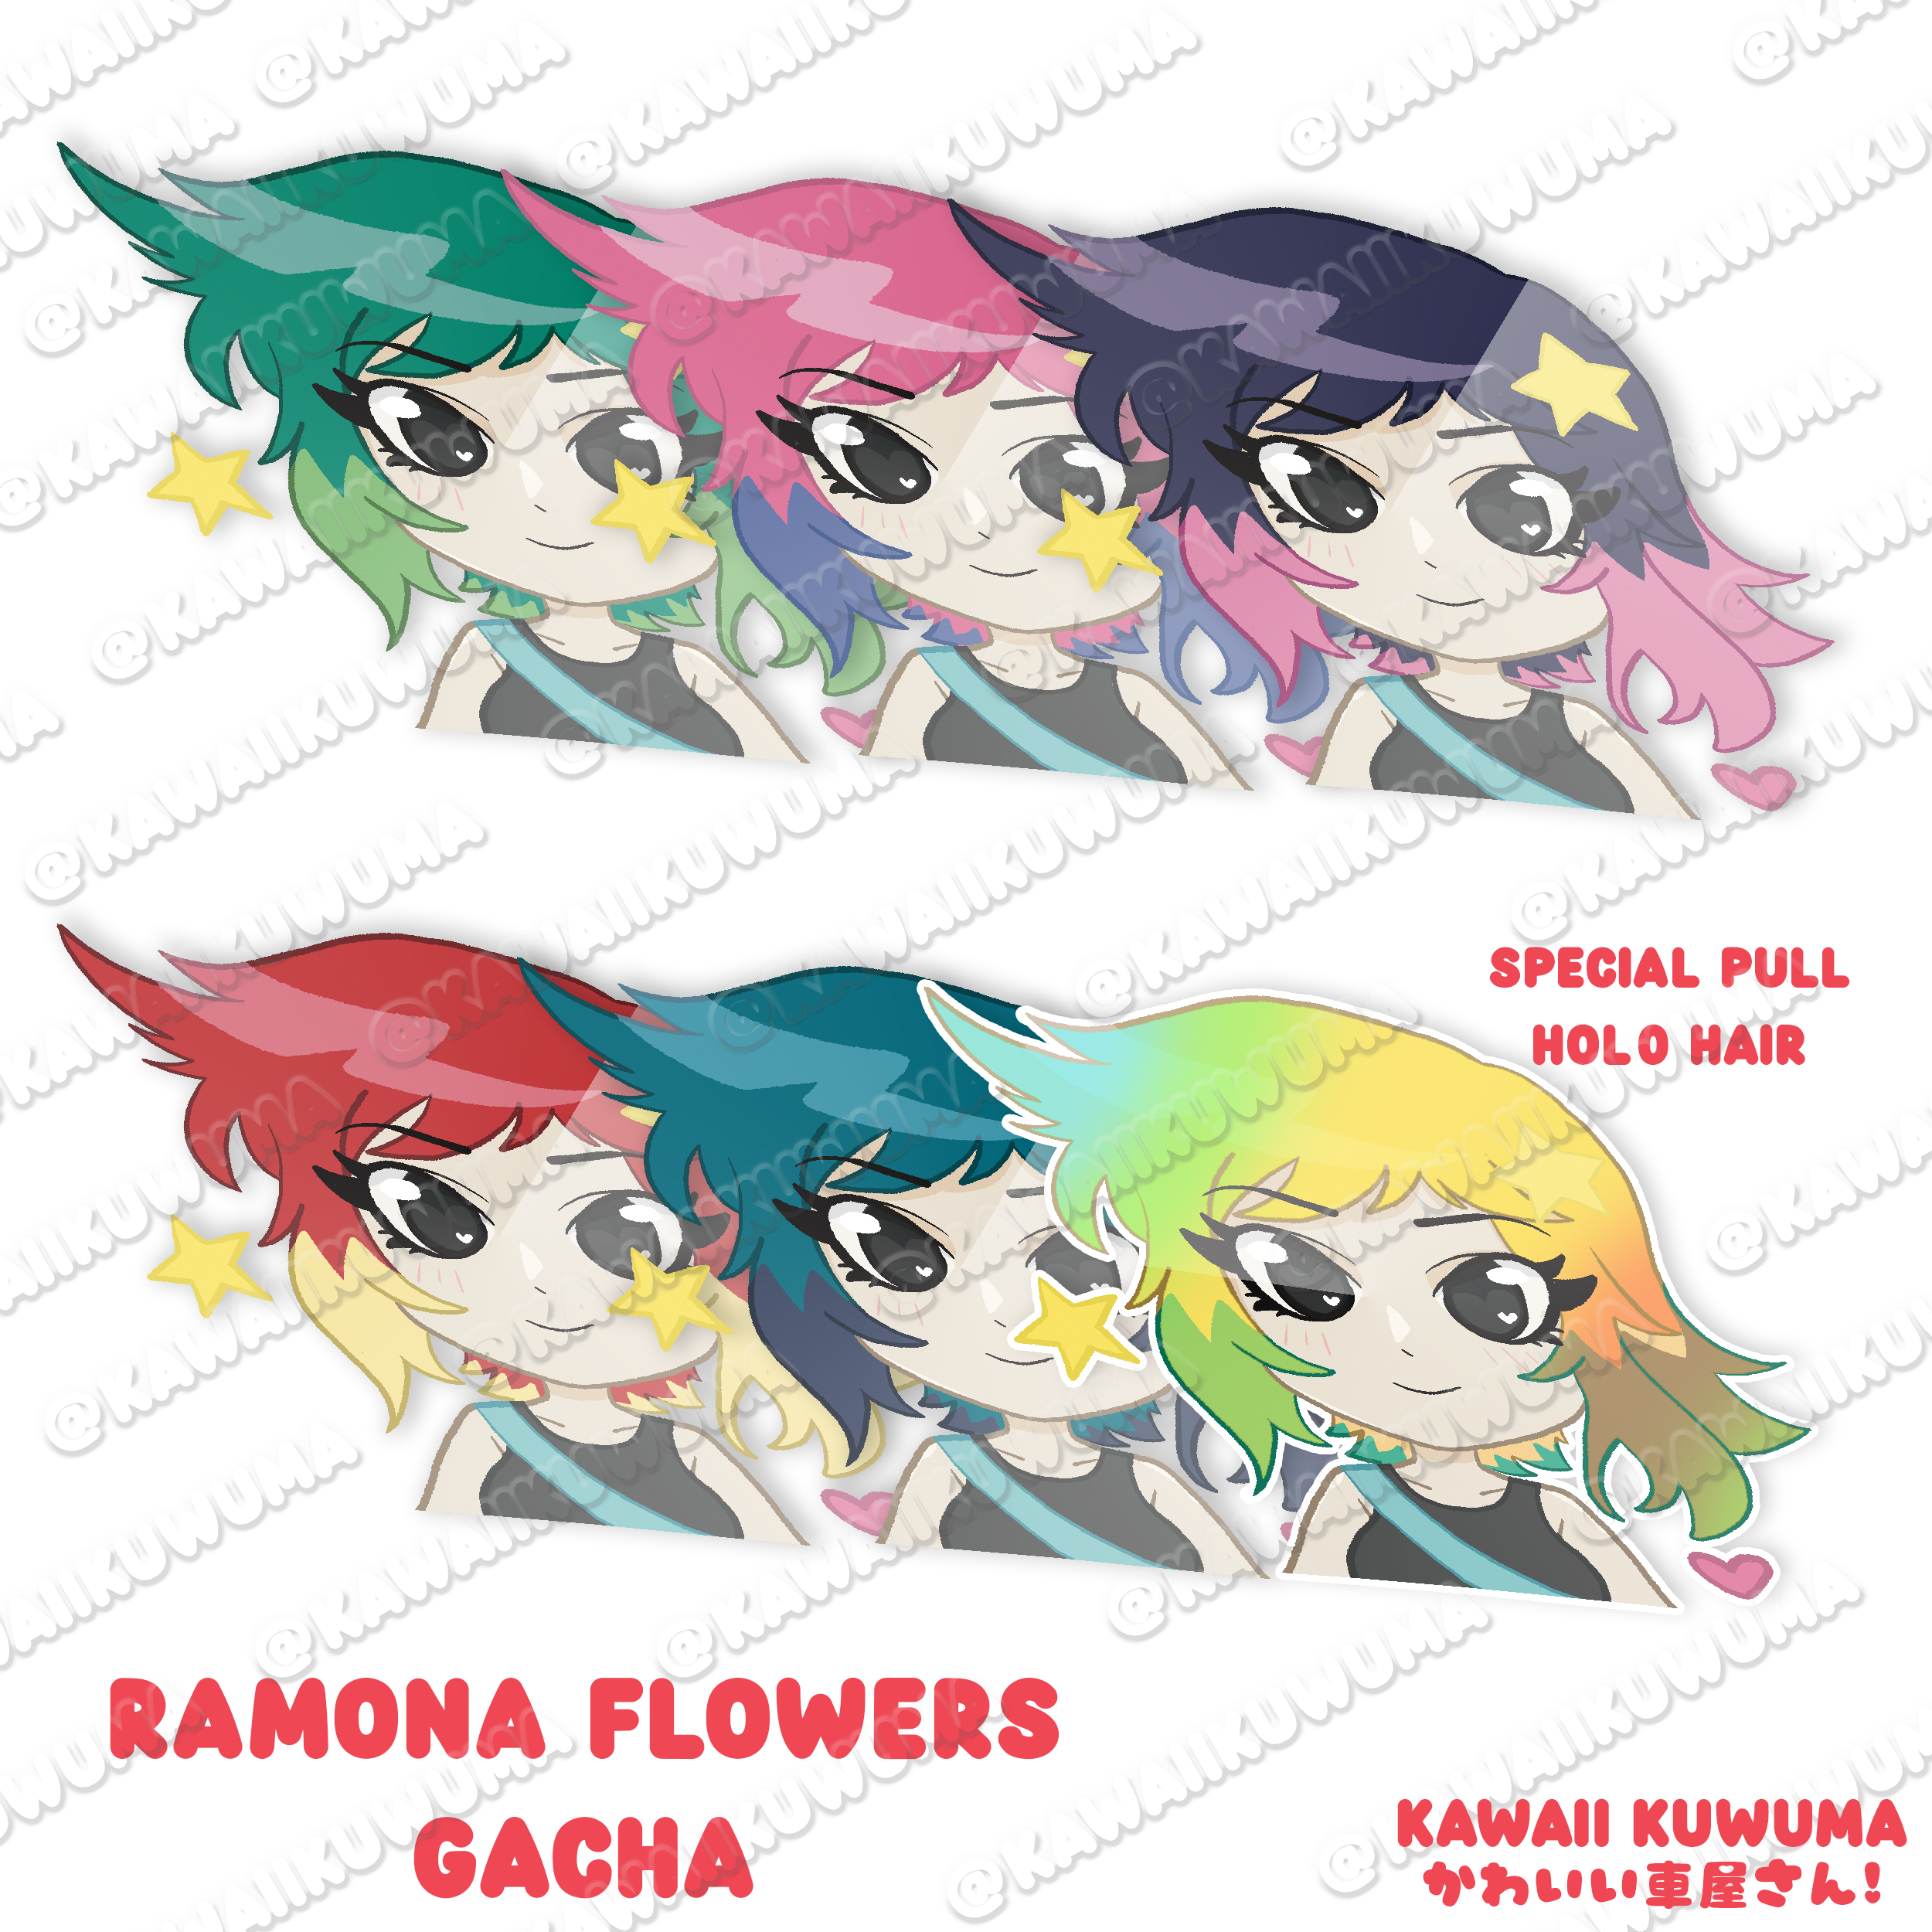 Ramona Flowers Peeking